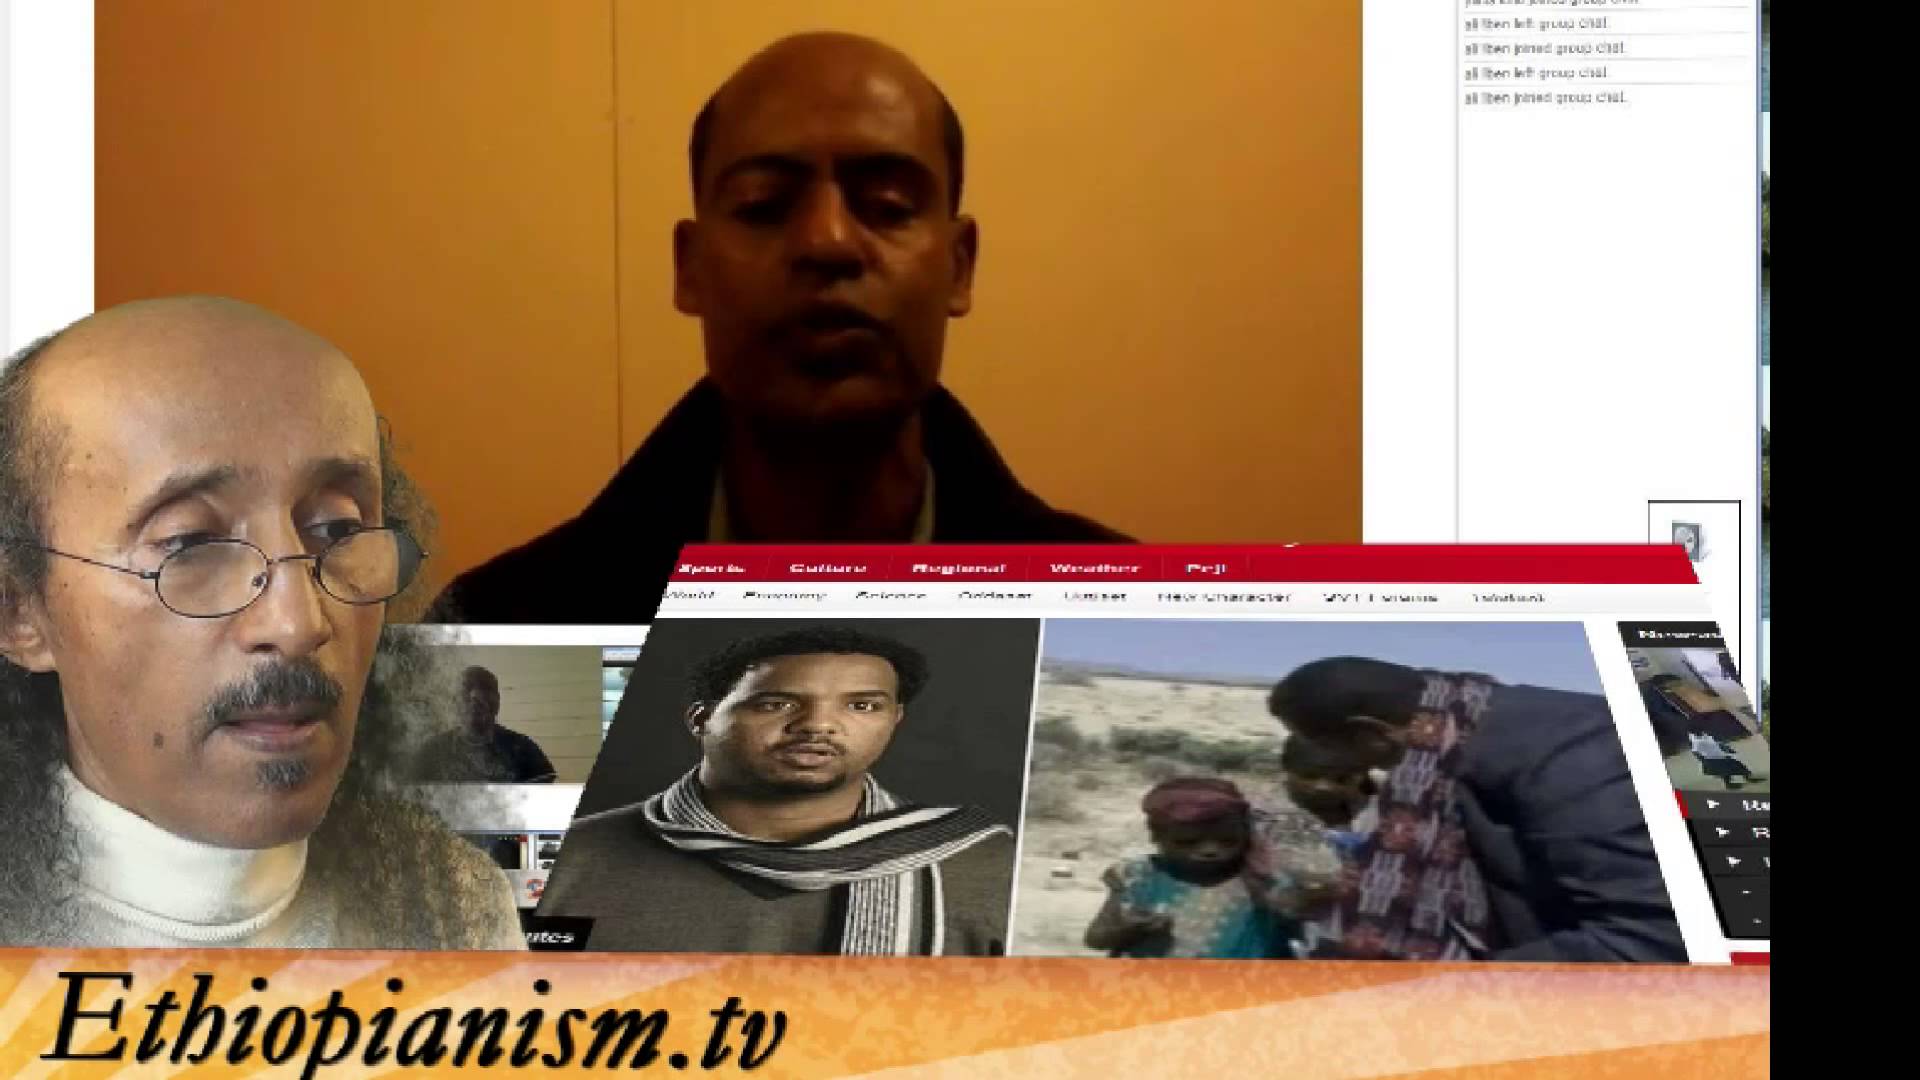 Ethiopianism.tv Weekly Real News ሳምንታዊ የዜናዎች ዉስጠ ዘ Oct 18,2013